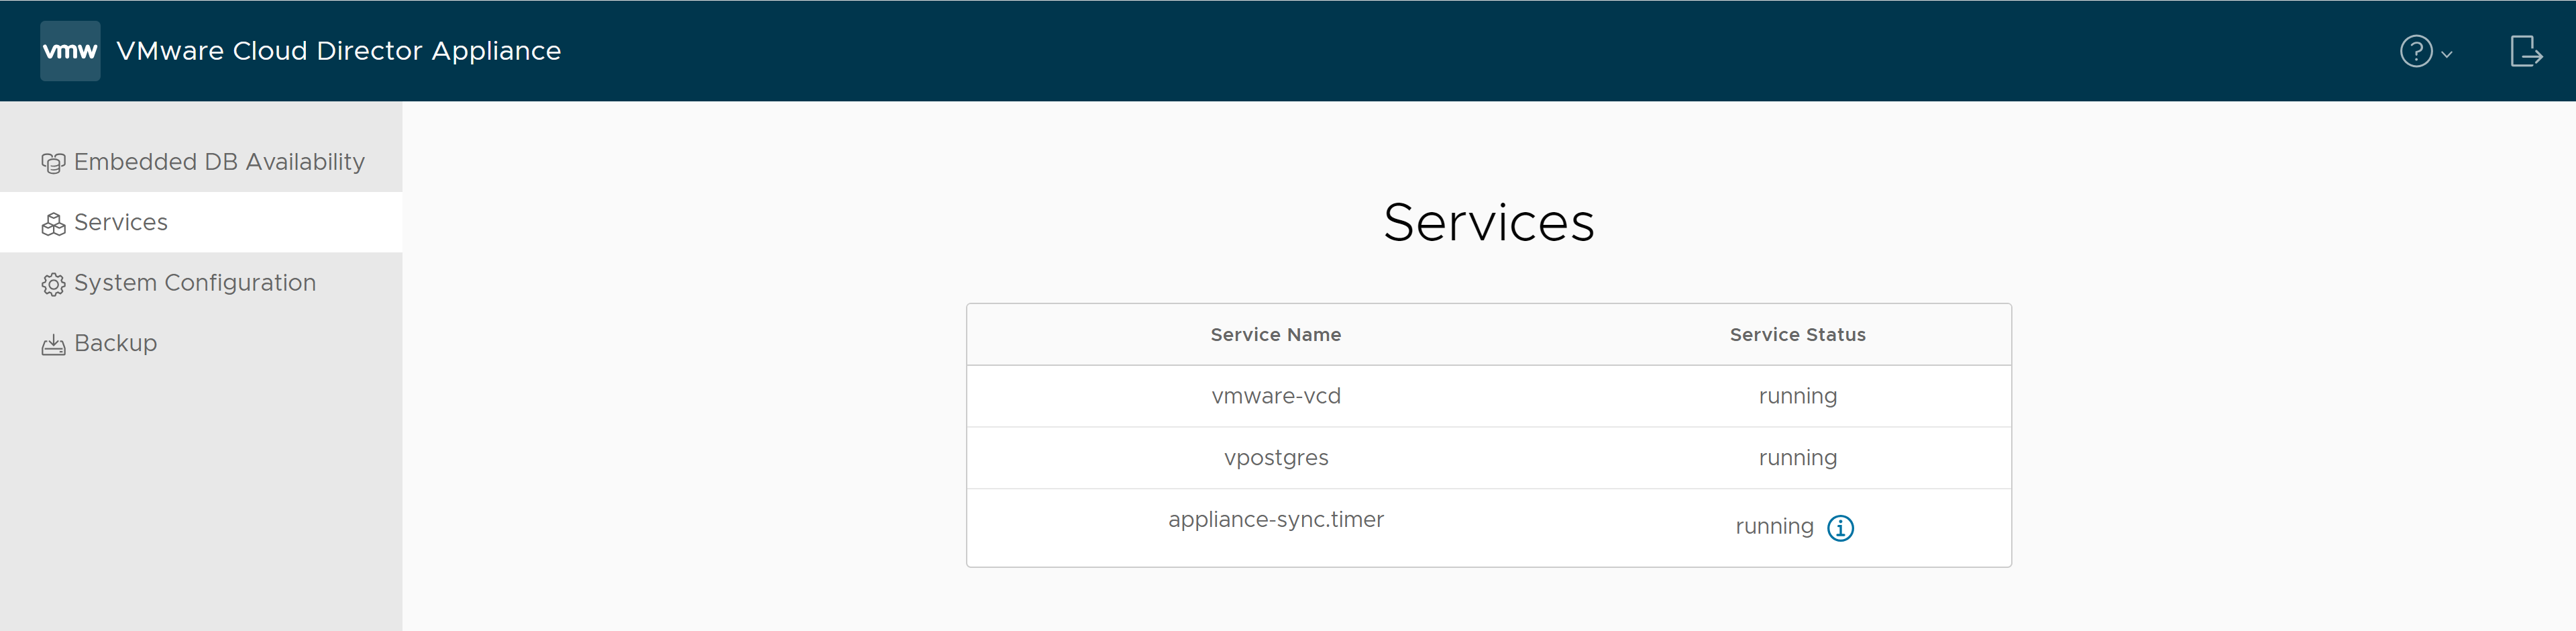 En la pestaña Servicios de la interfaz de usuario de administración de dispositivos de VMware Cloud Director, puede encontrar los nombres de los servicios y sus estados.